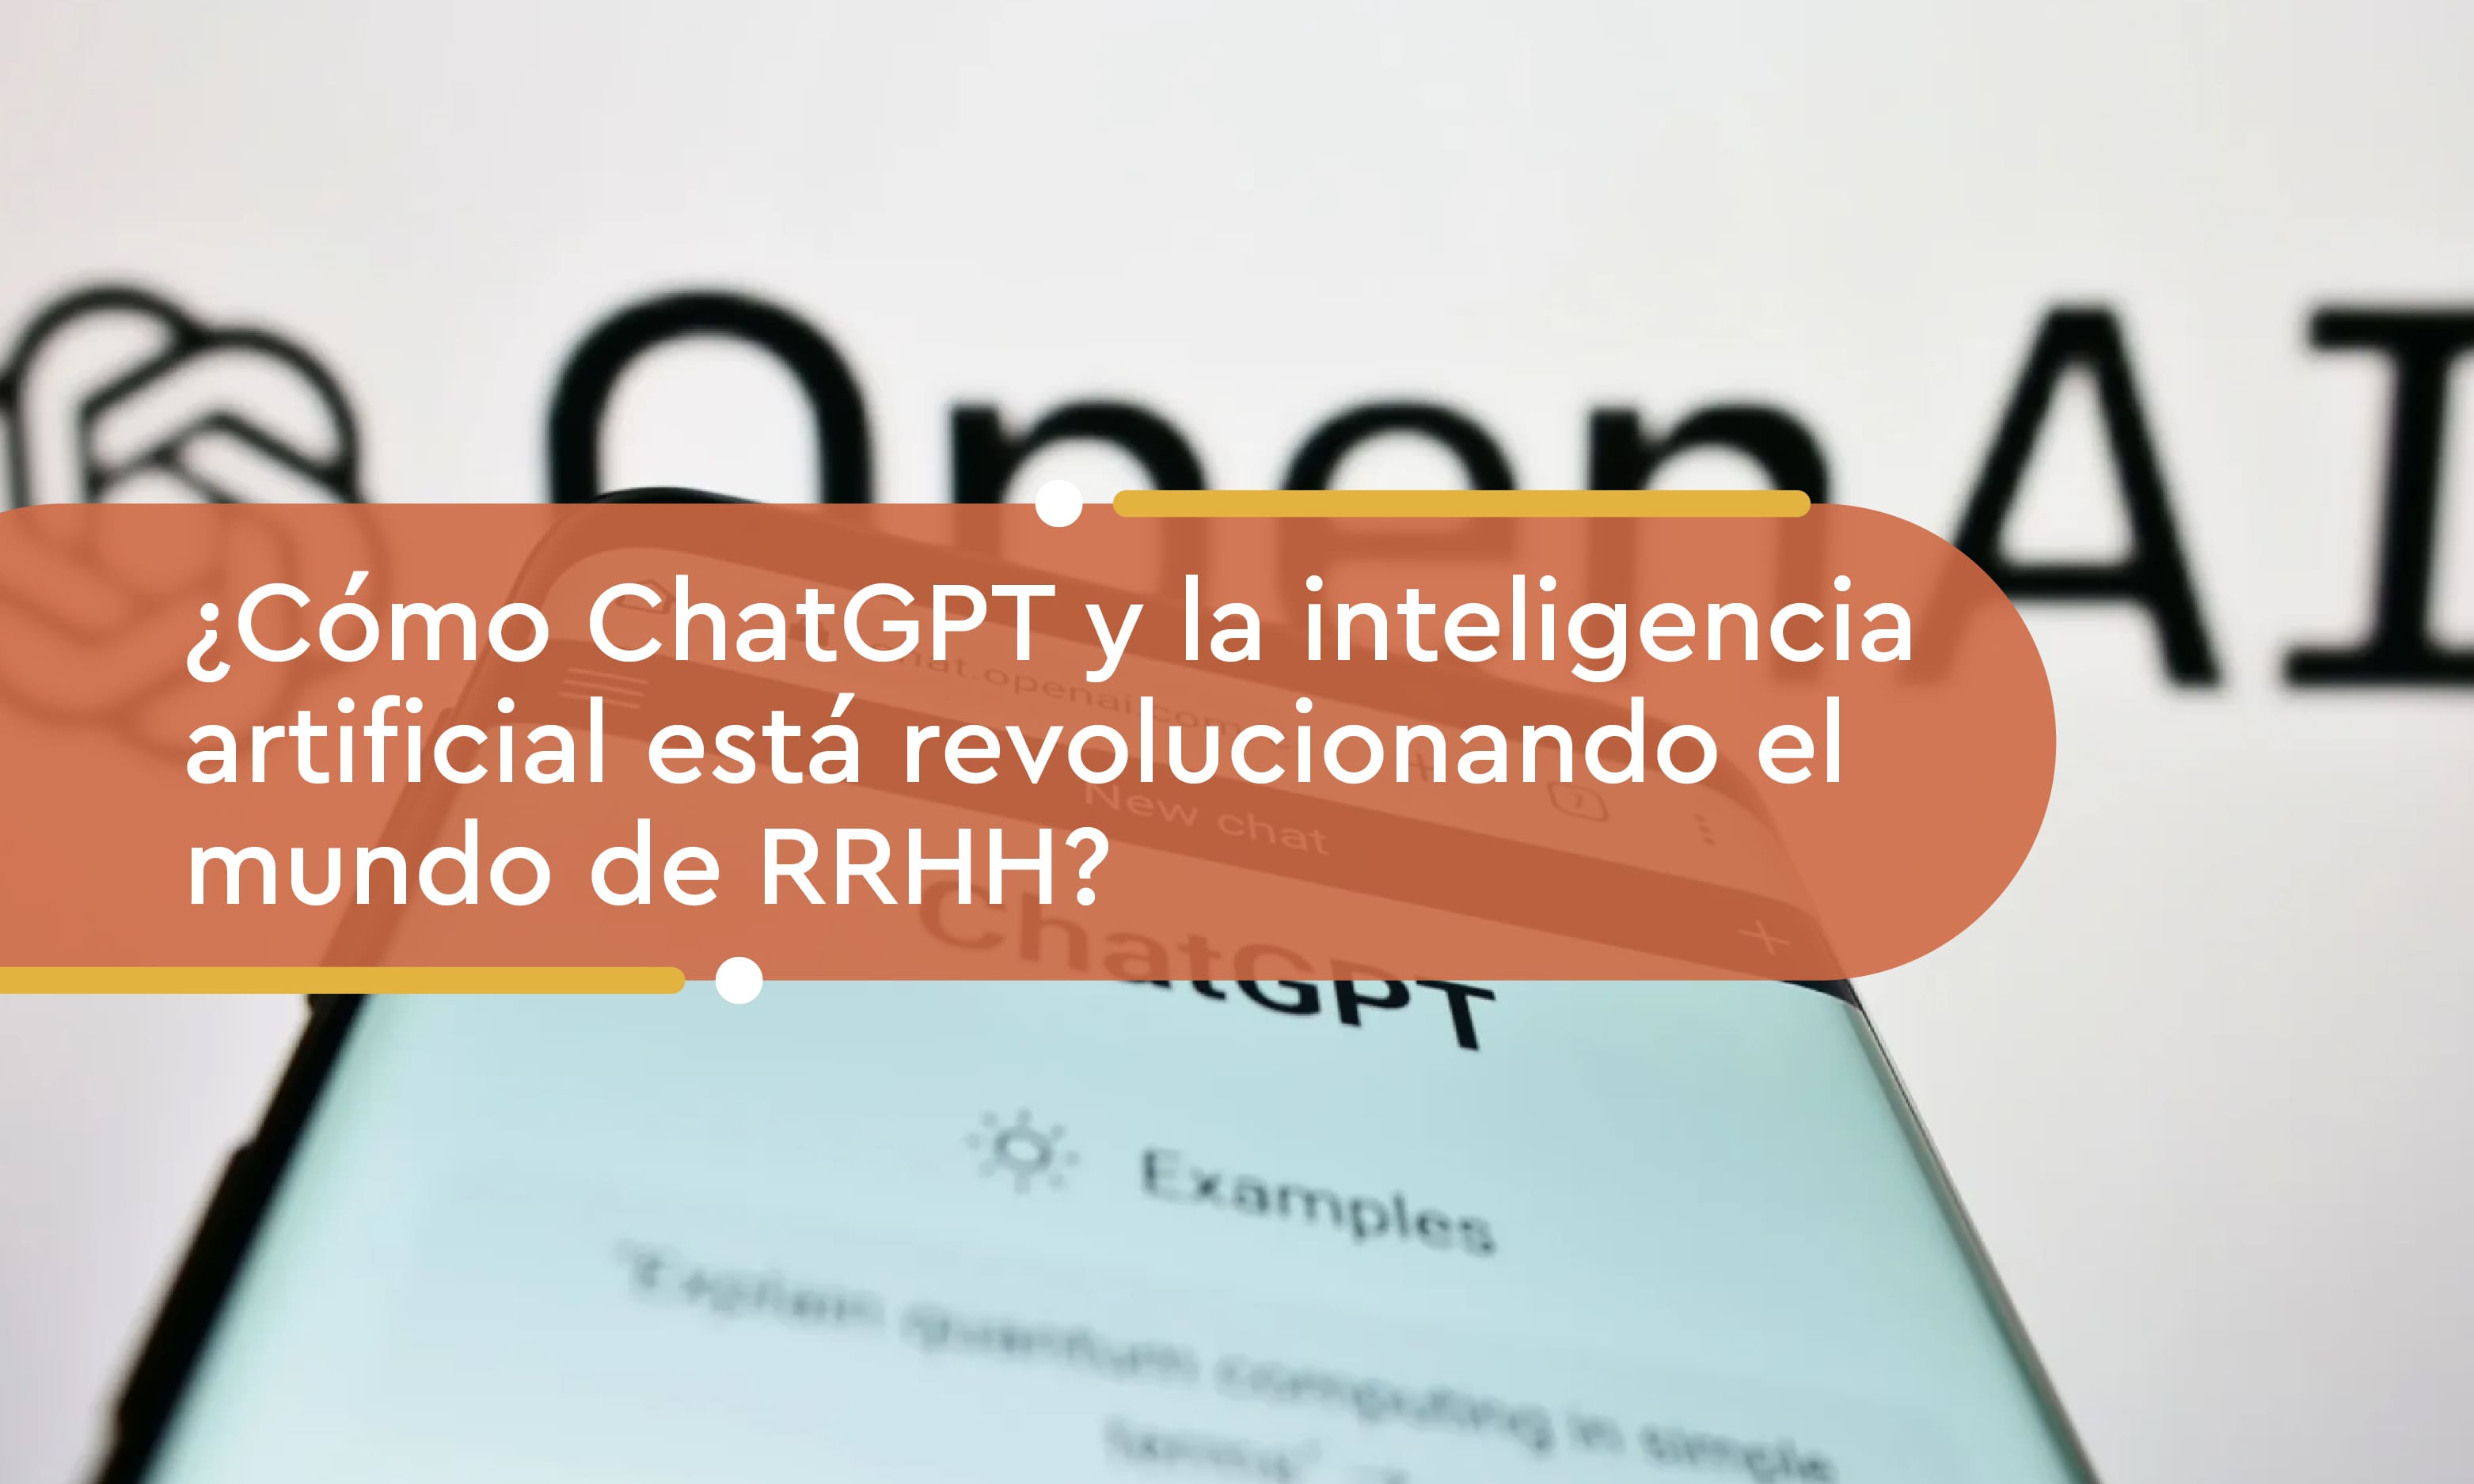 ¿Cómo ChatGPT y la inteligencia artificial está revolucionando el mundo de RRHH?